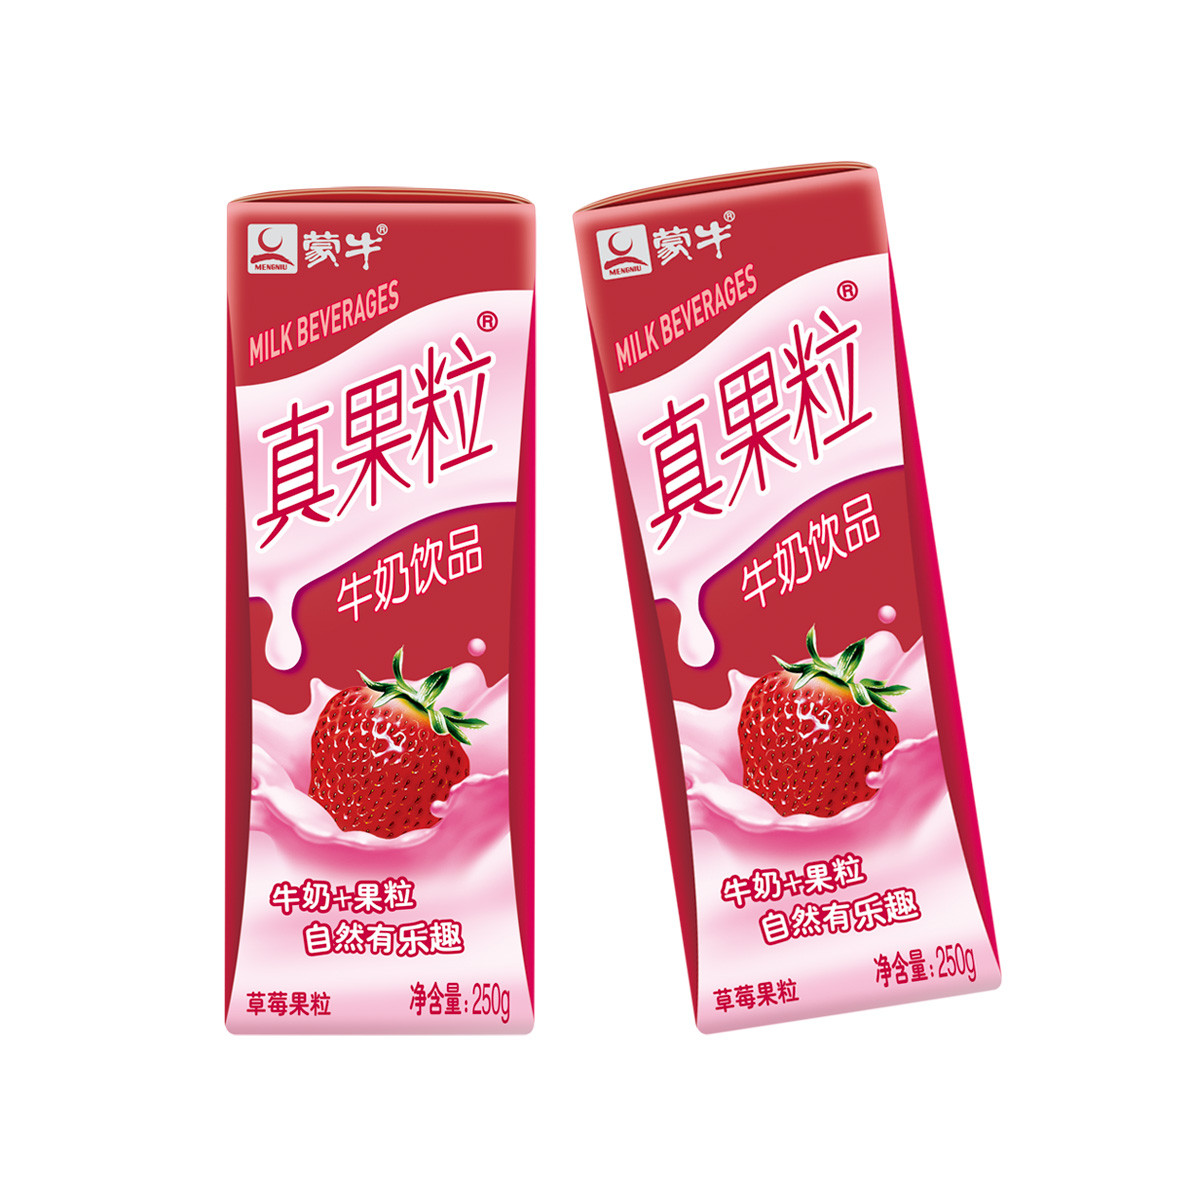 真果粒草莓果粒250g×12盒